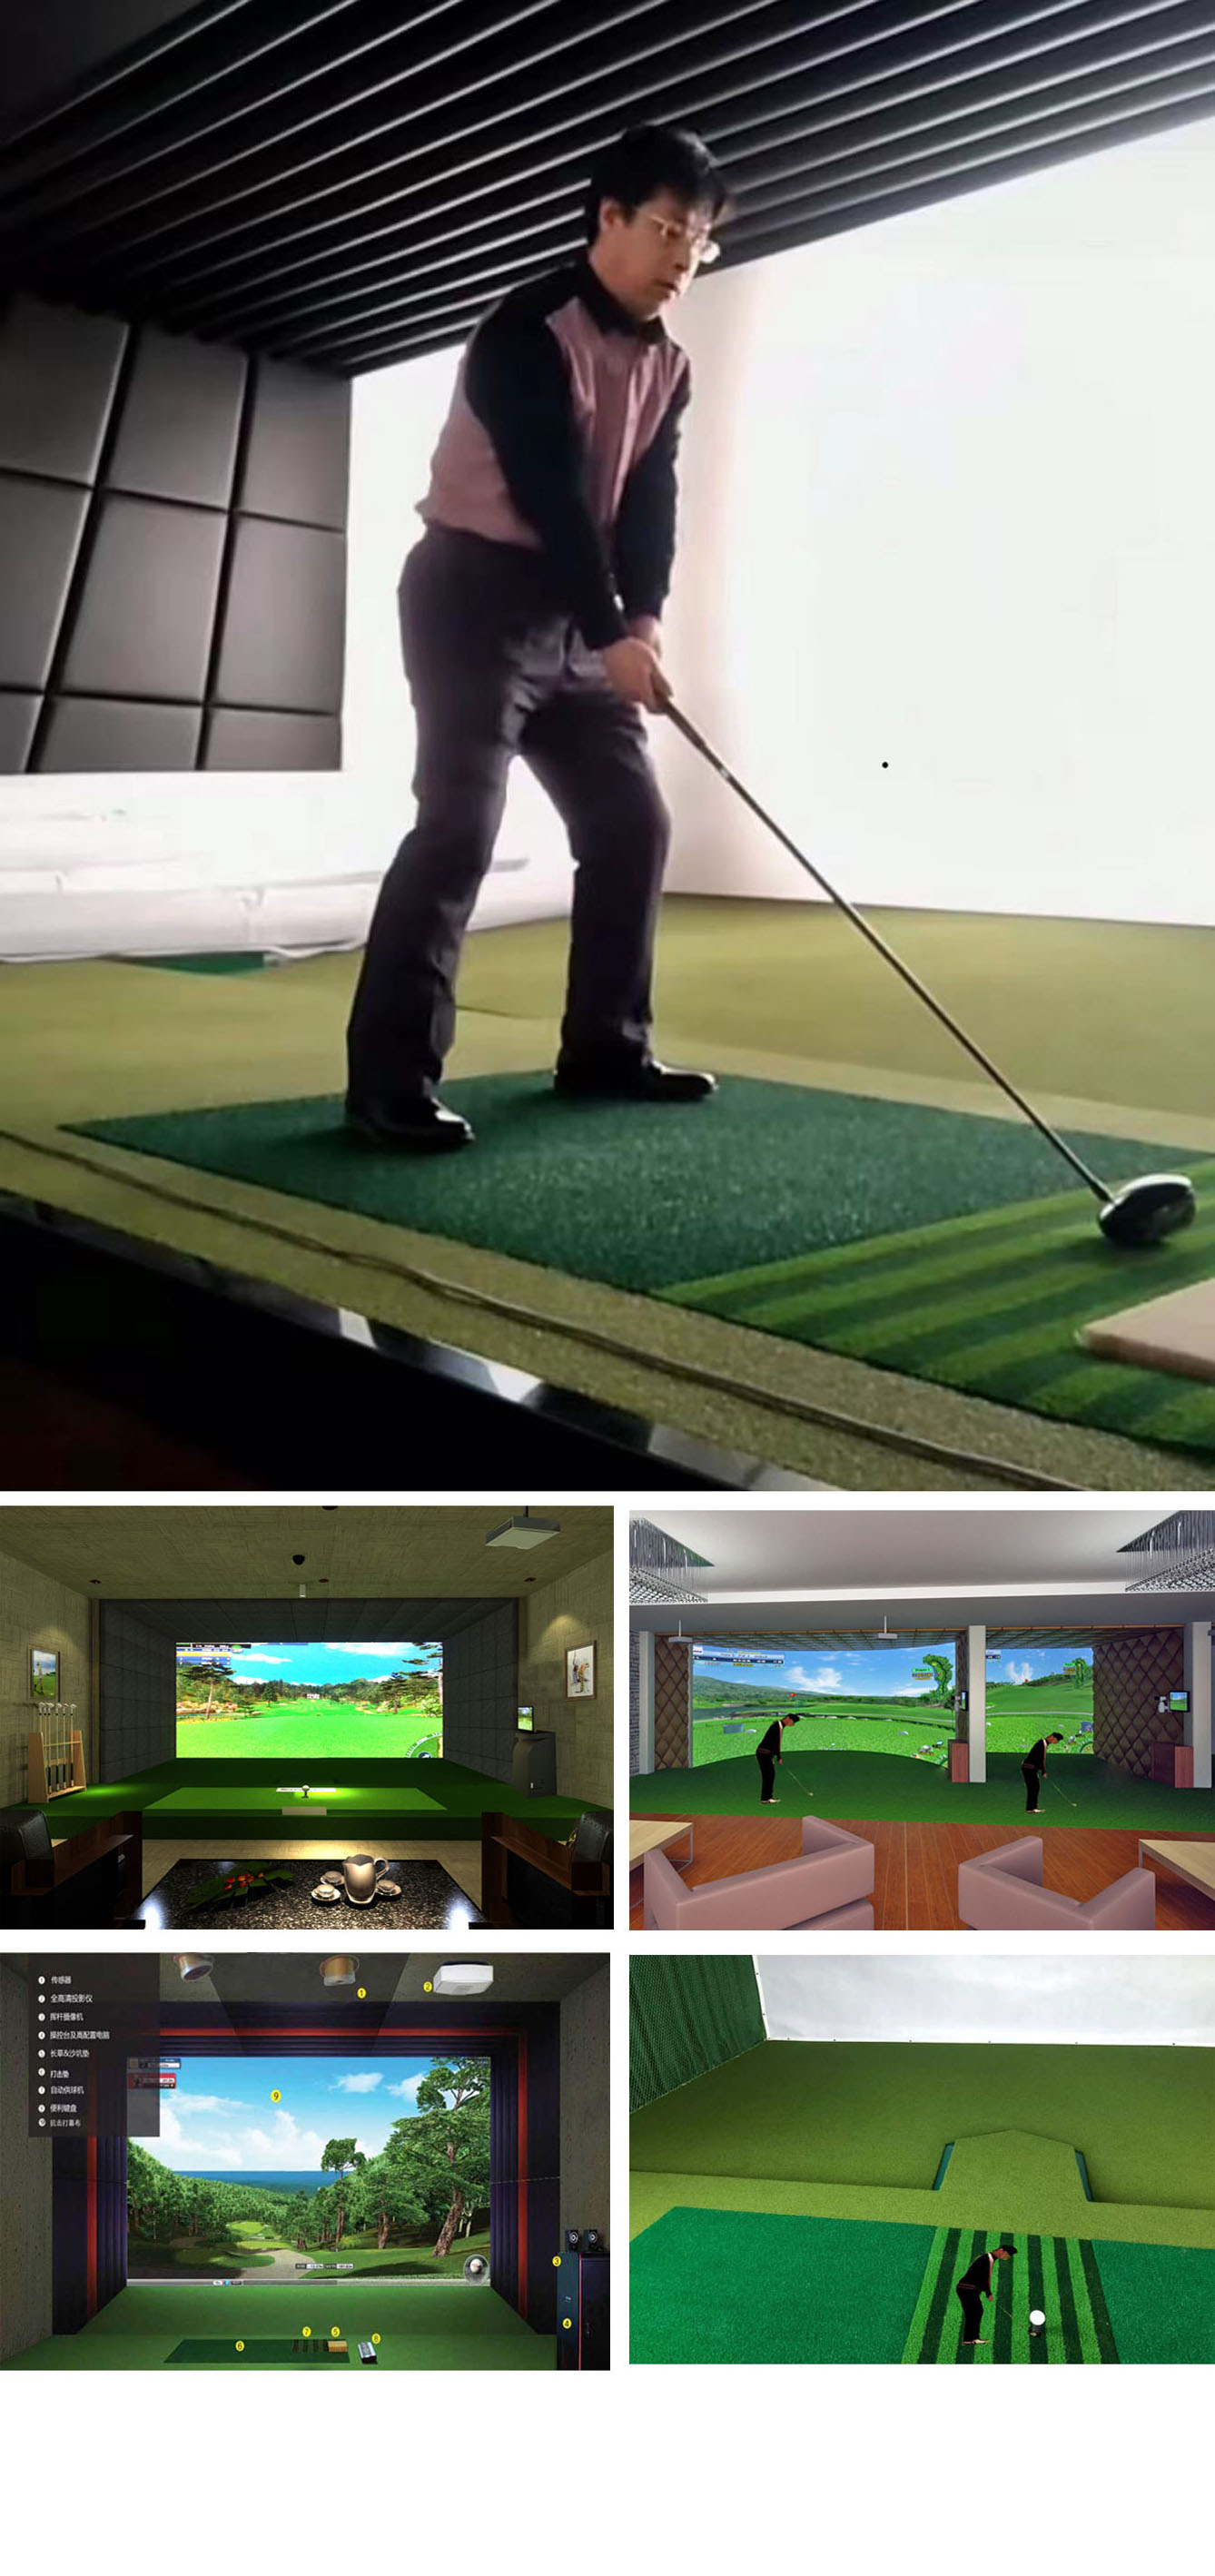 高尔夫模拟练习设备 33.jpg